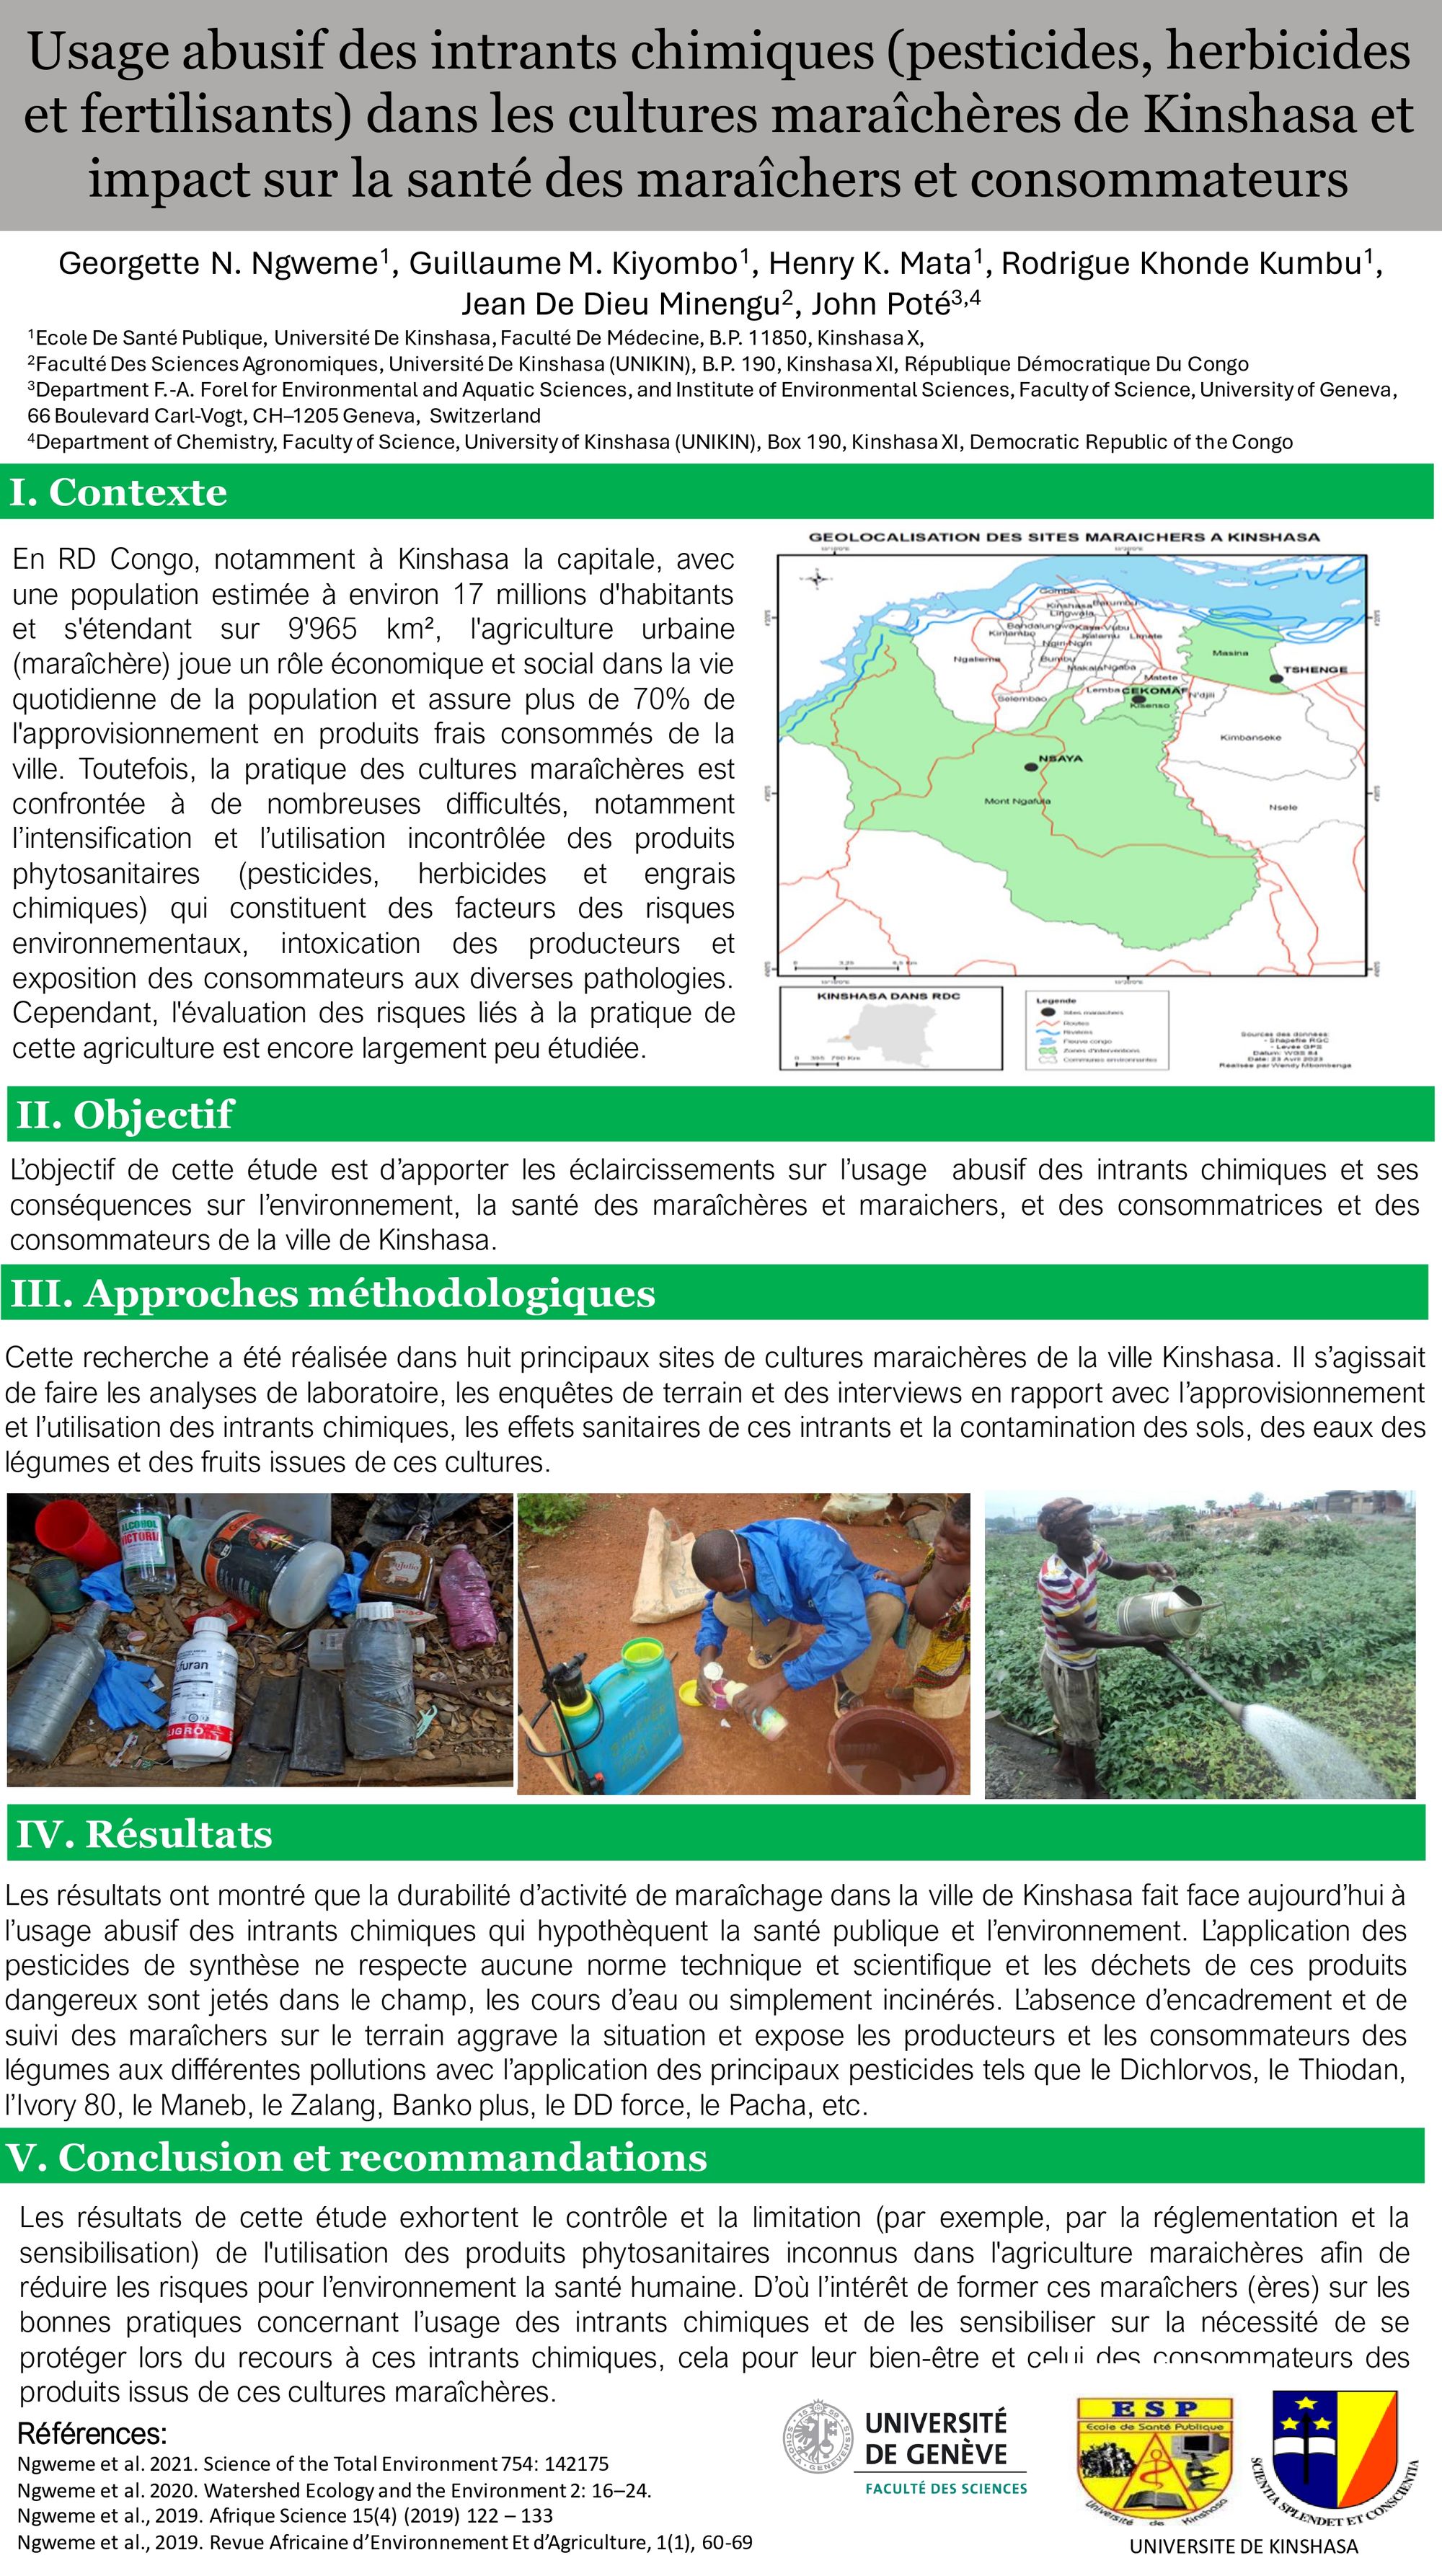 Usage abusif des intrants chimiques (pesticides, herbicides et fertilisants) dans les cultures maraîchères de Kinshasa et impact sur la santé des maraîchers et consommateurs